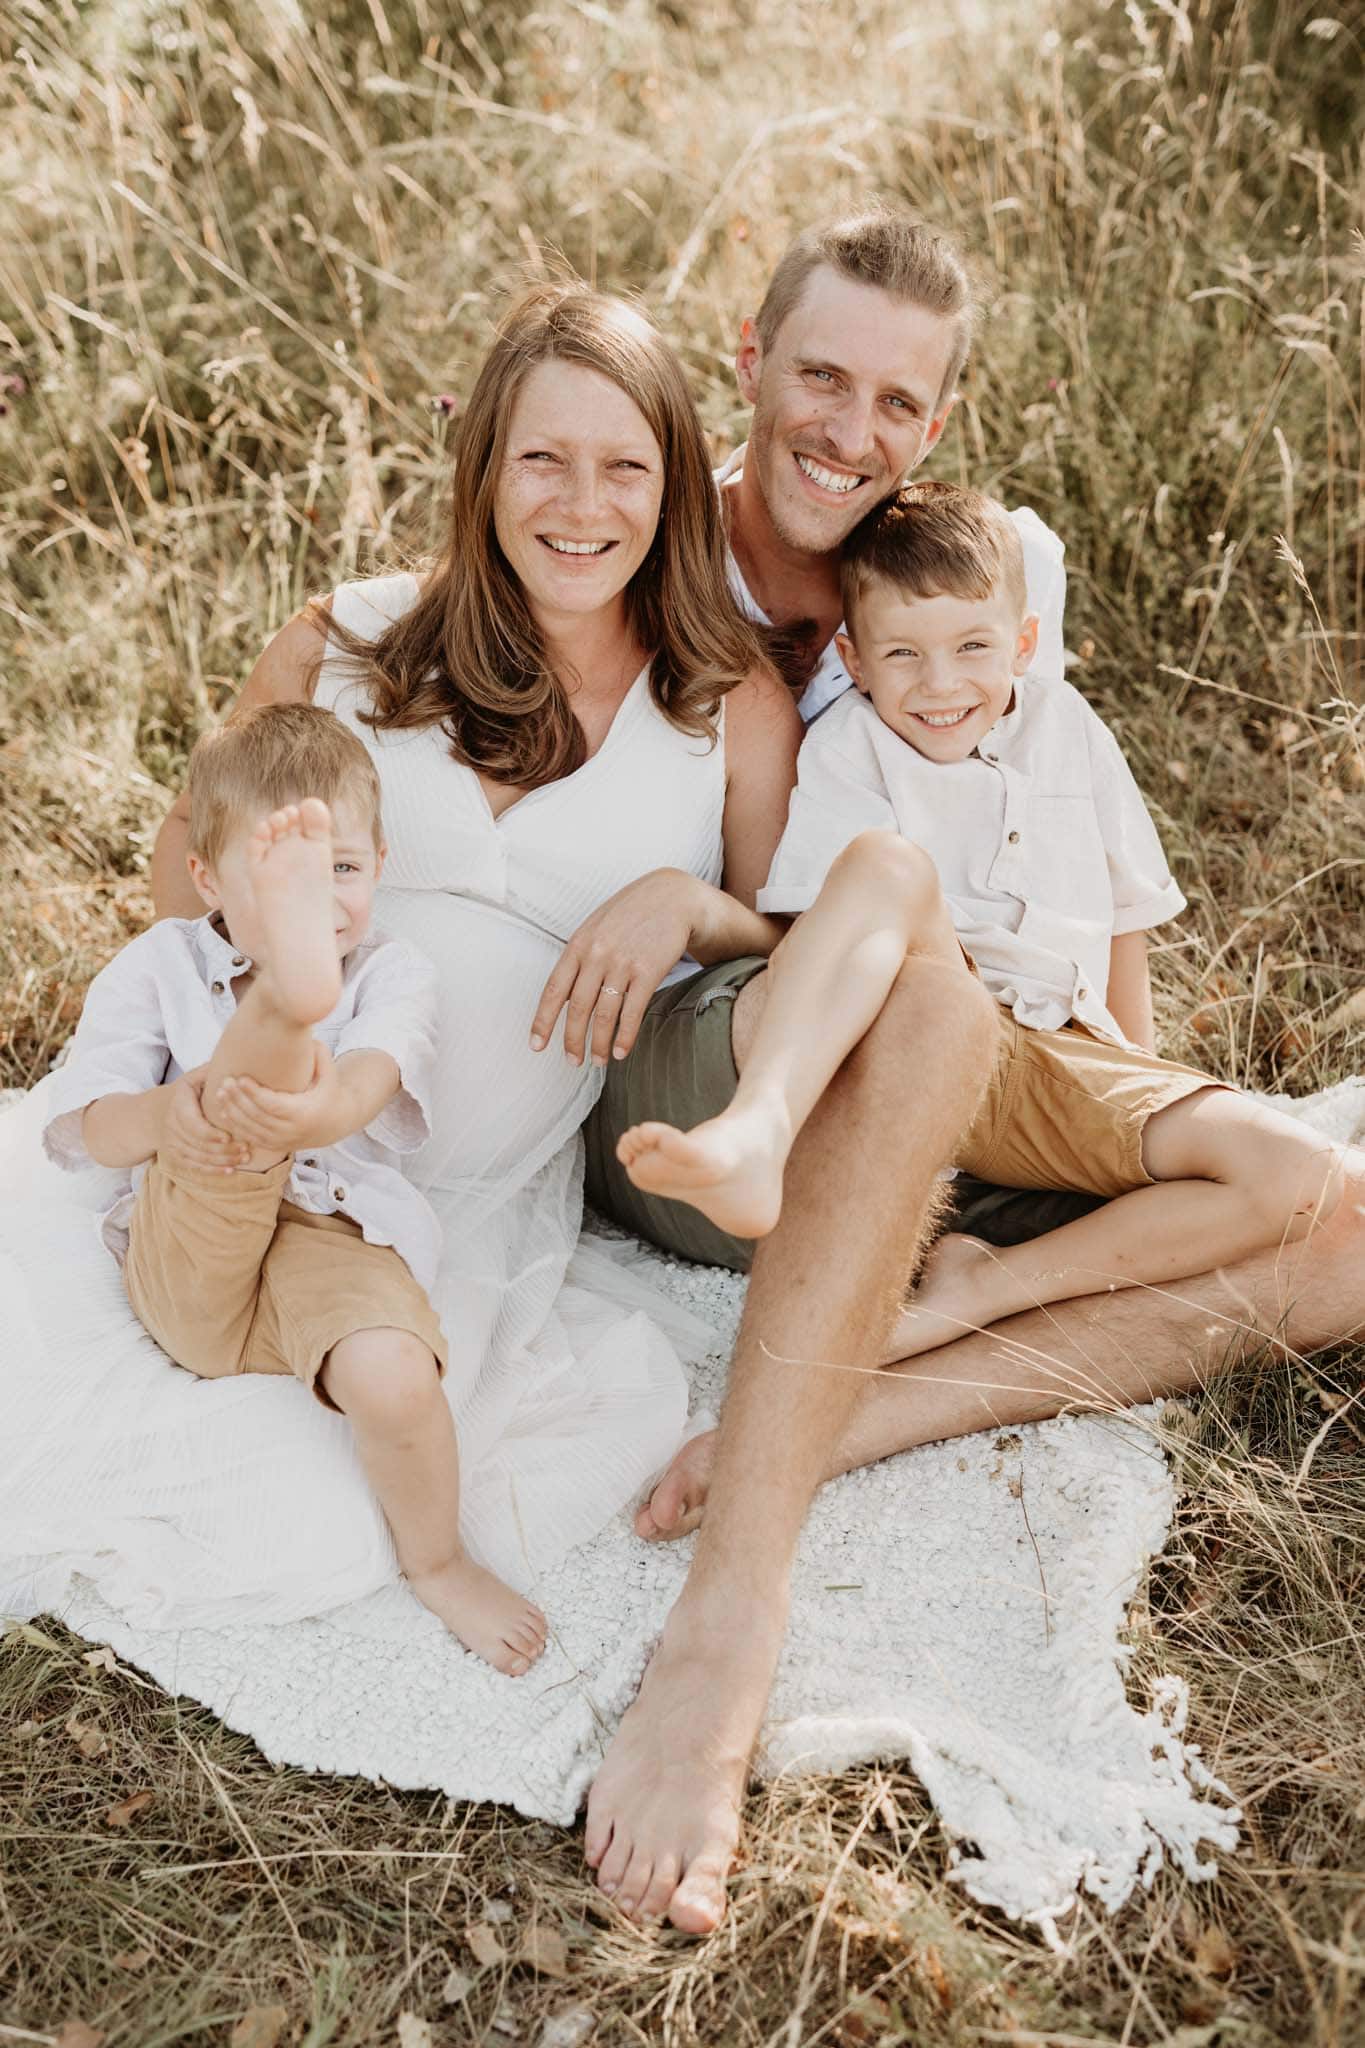 Familienfoto in einer Wiese mit weißer Decke